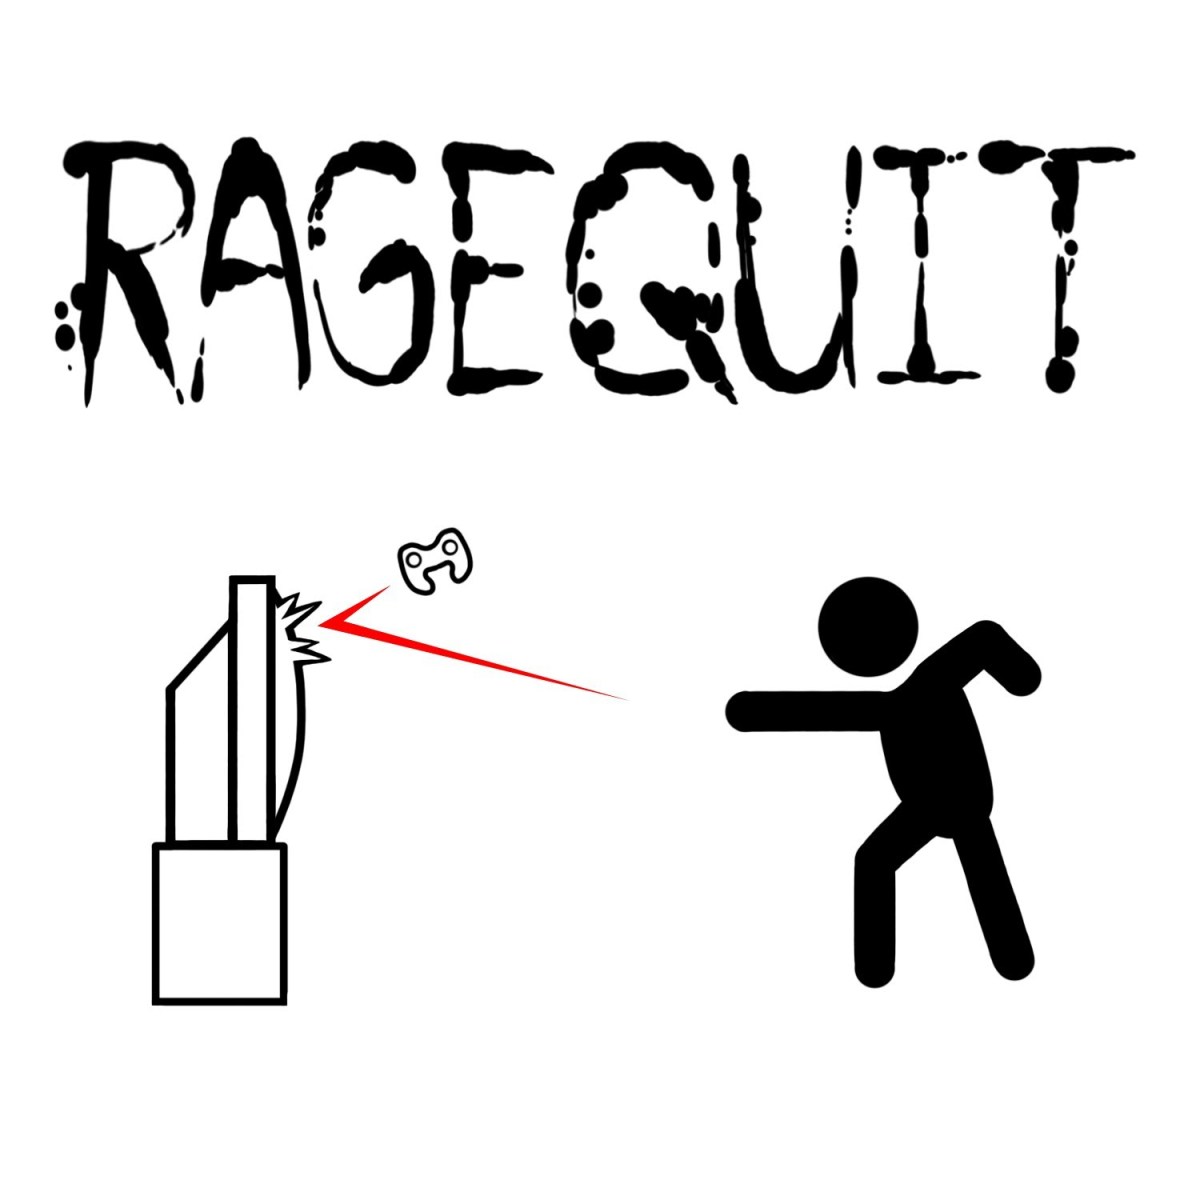 Rage quit: significado, conceito e definição - Definição.net